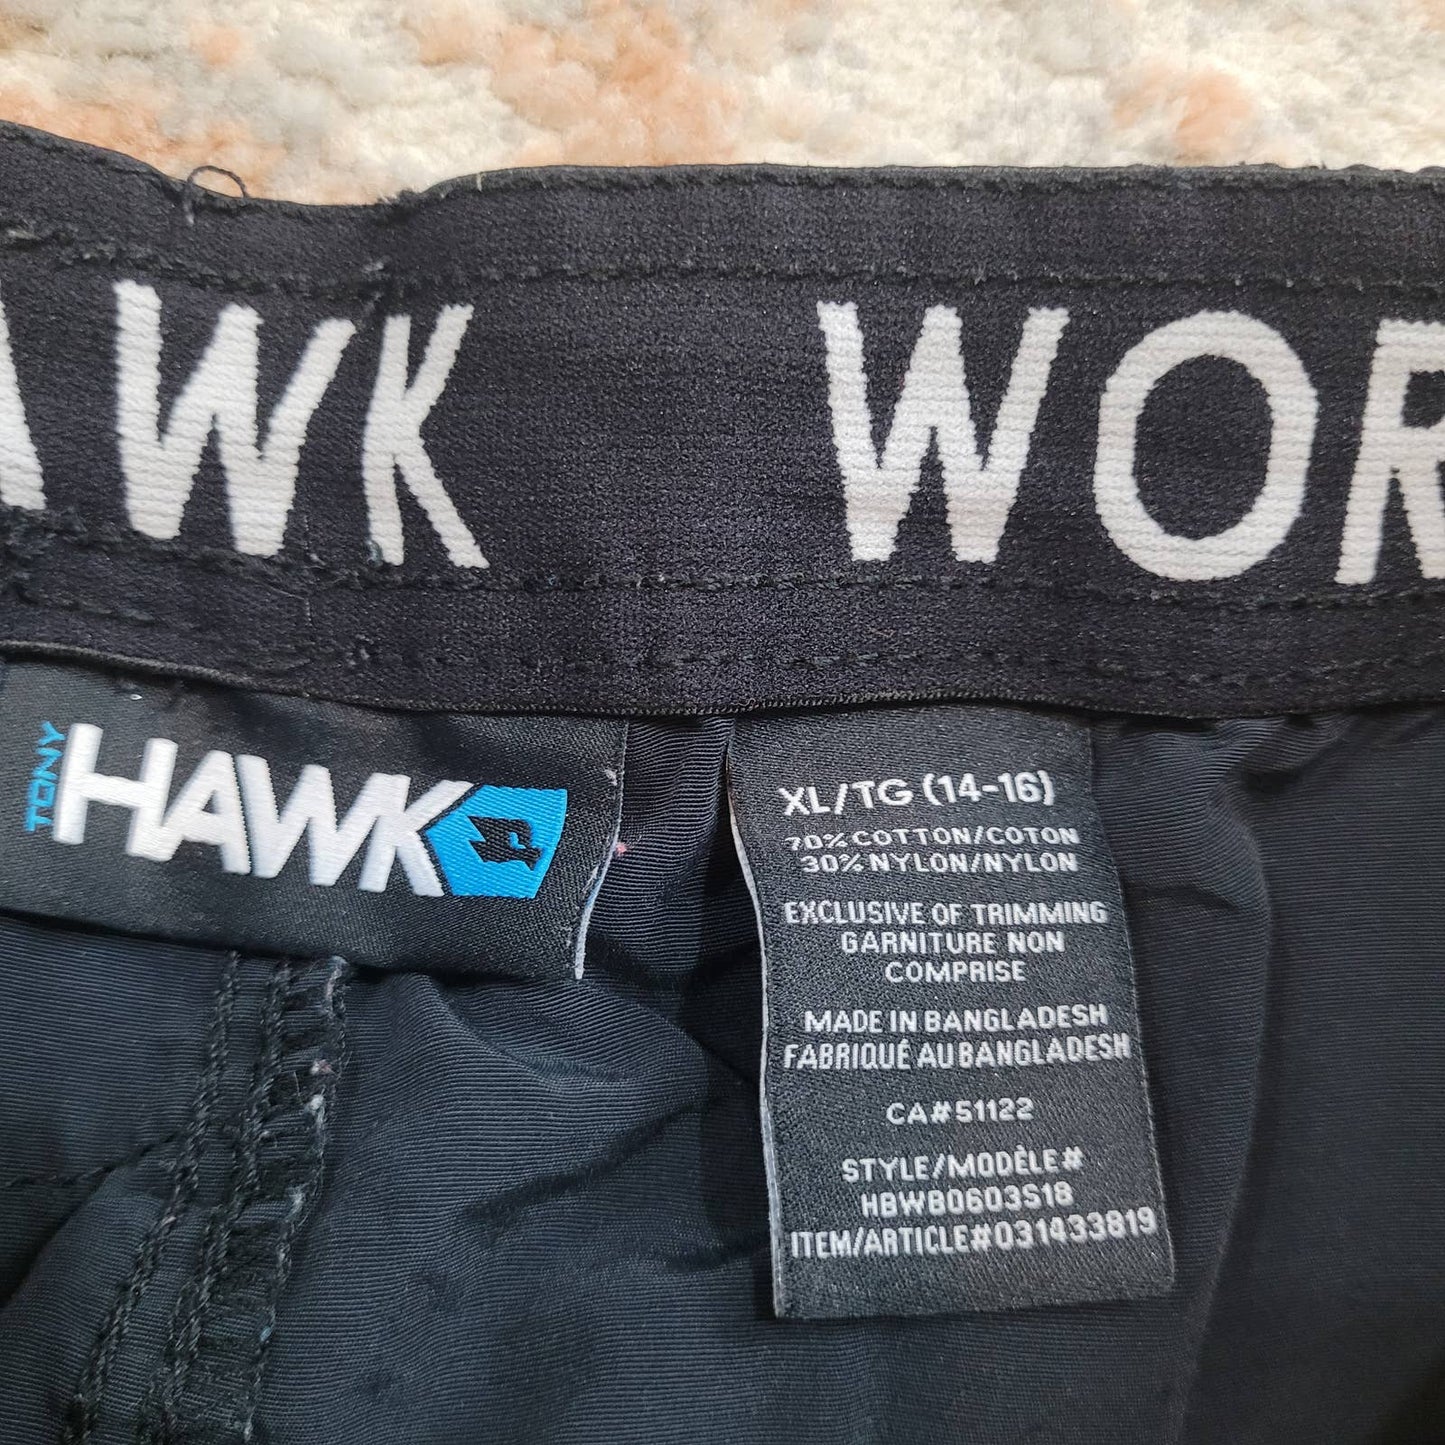 Tony Hawk Black Shorts - Size Extra Large